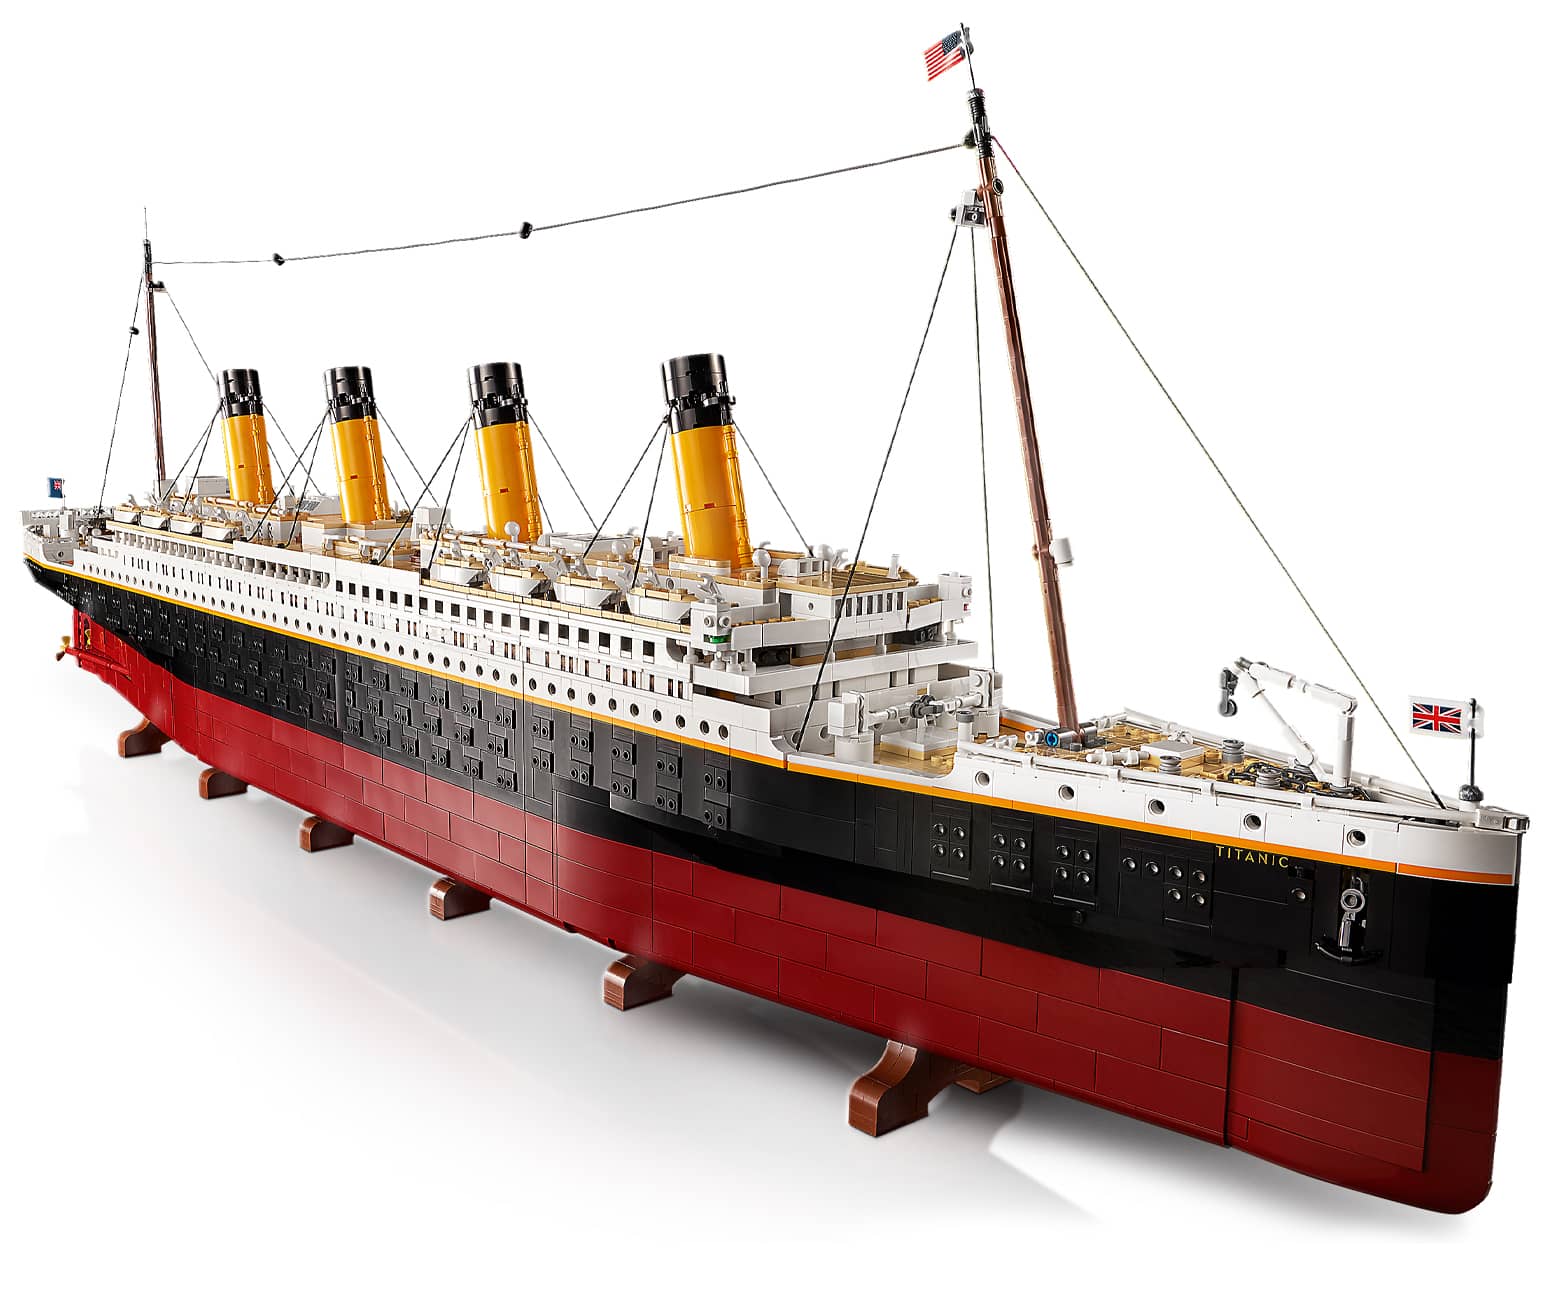 LEGO Titanic - 9,090 Pieces!